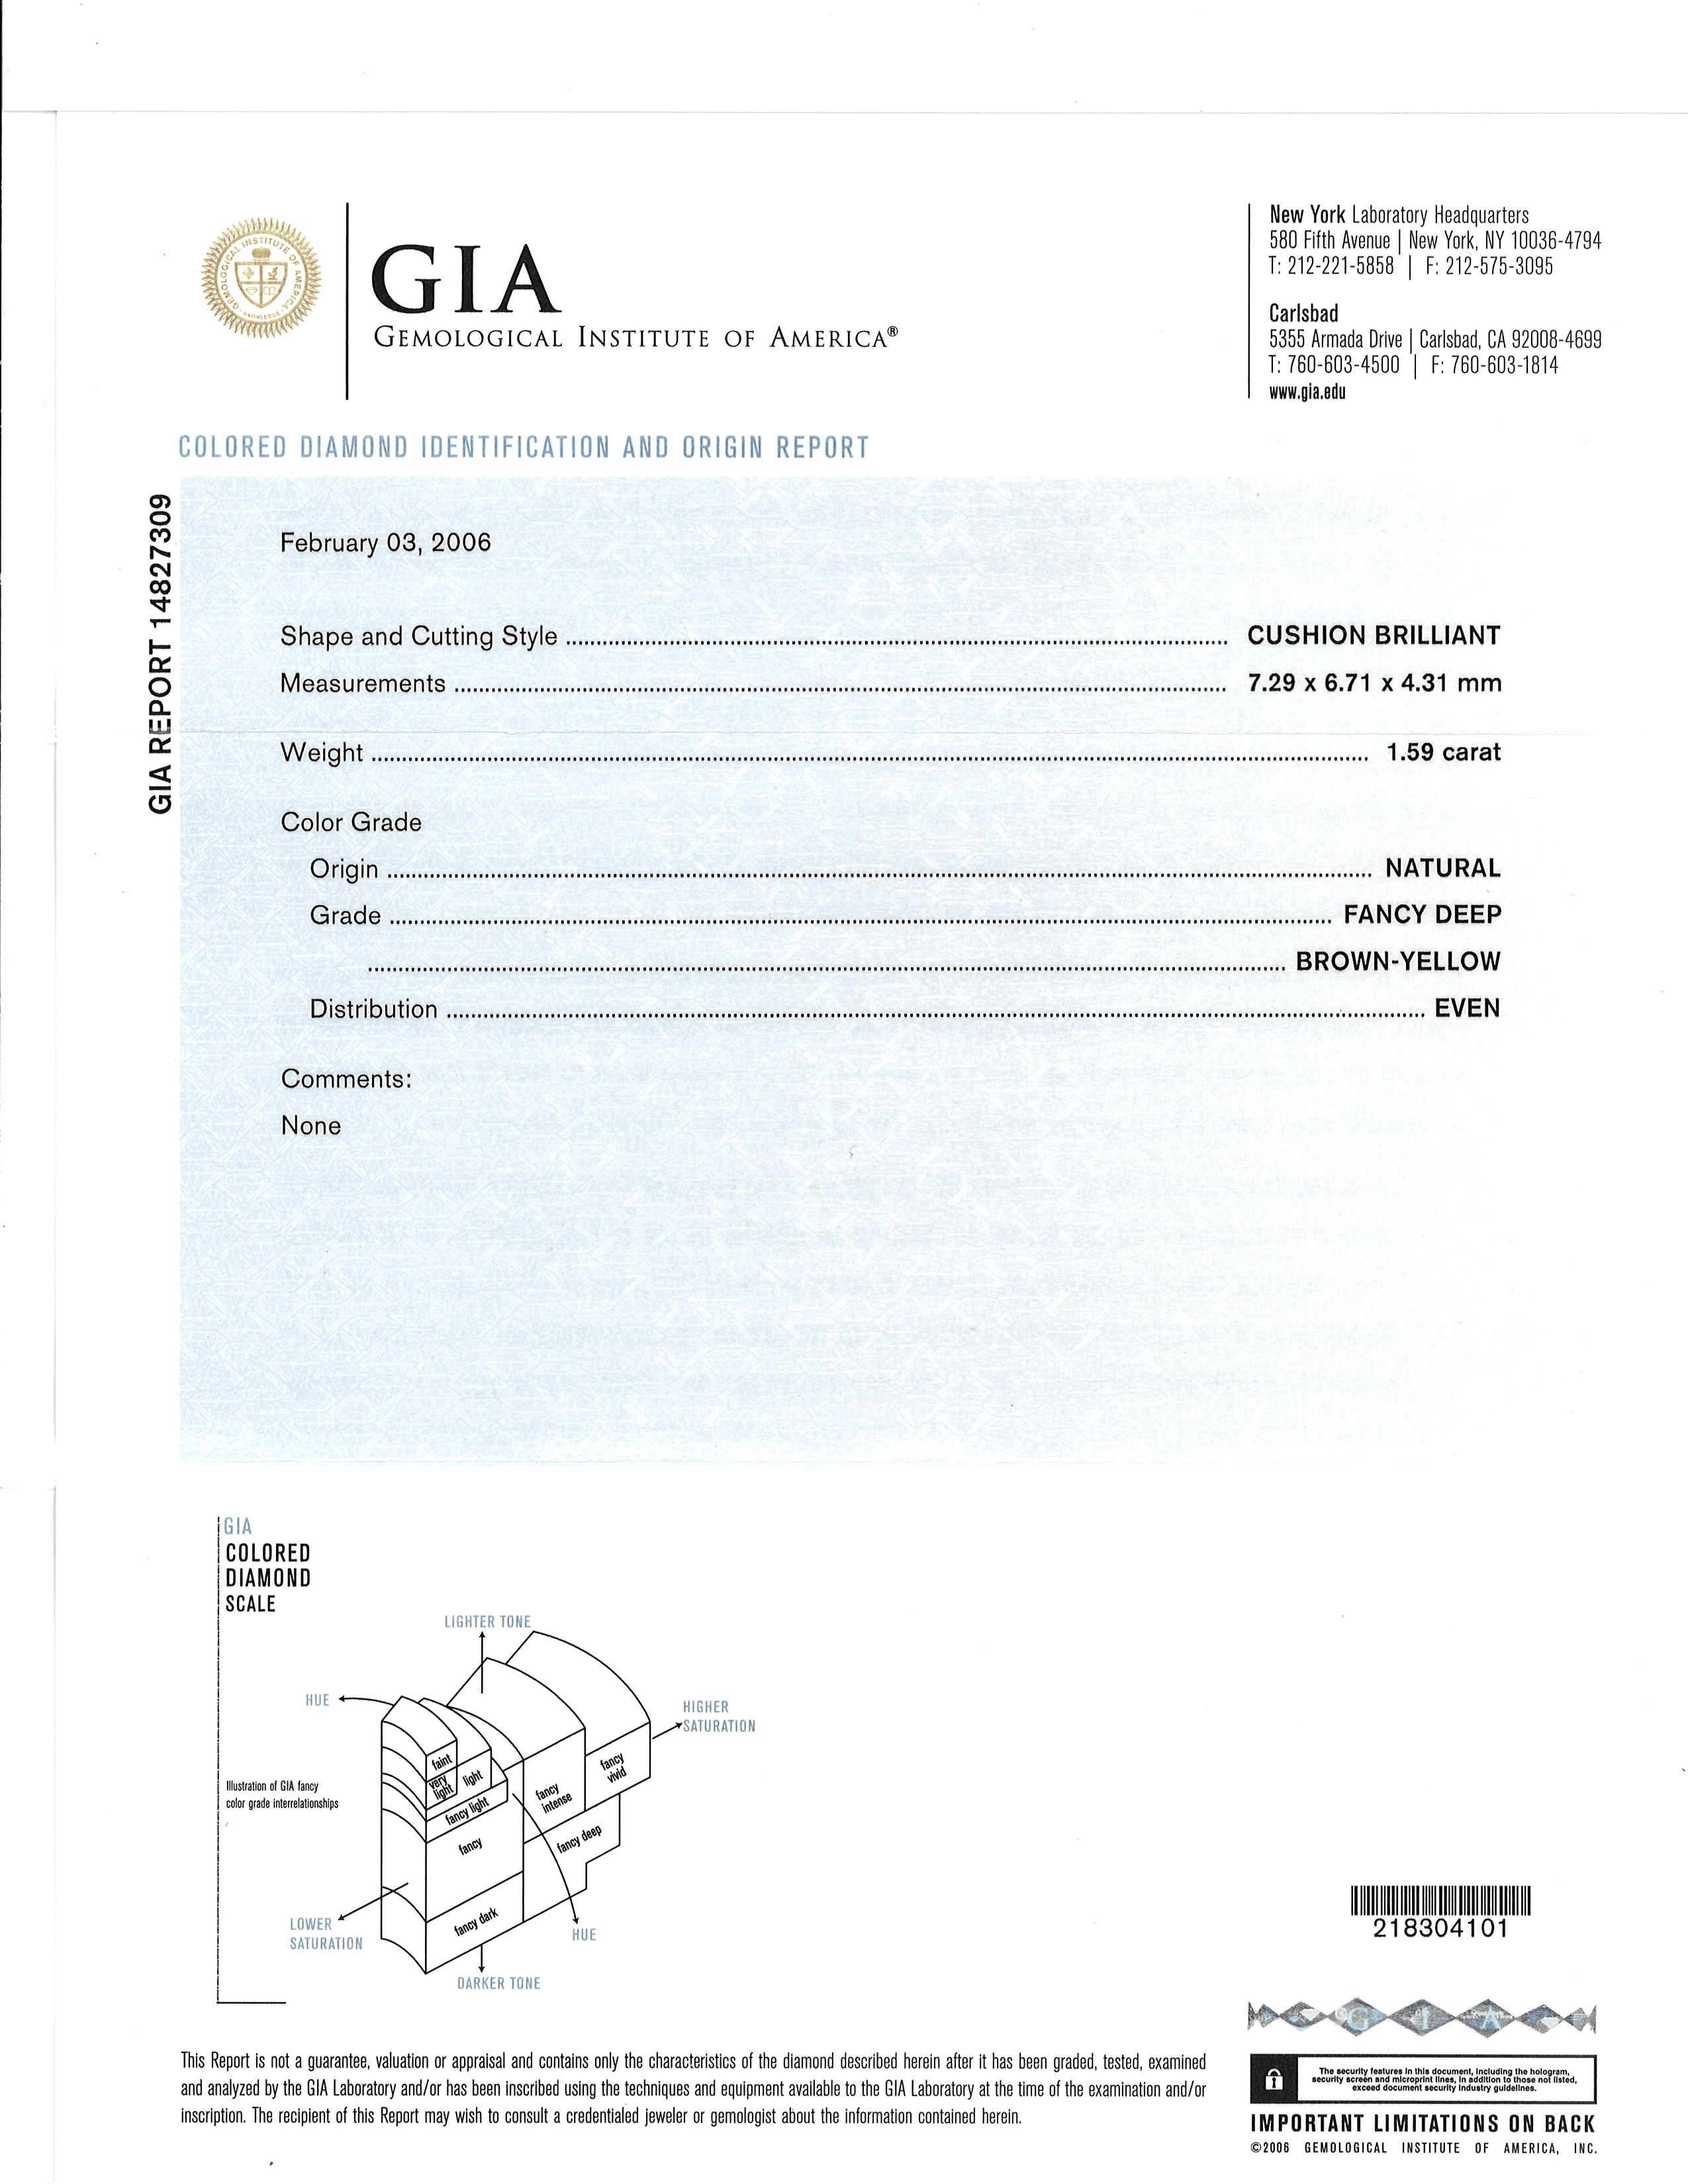 Bague en diamant brun-jaune foncé « Cognac » de 1,59 carat de couleur naturelle certifiée GIA en vente 2